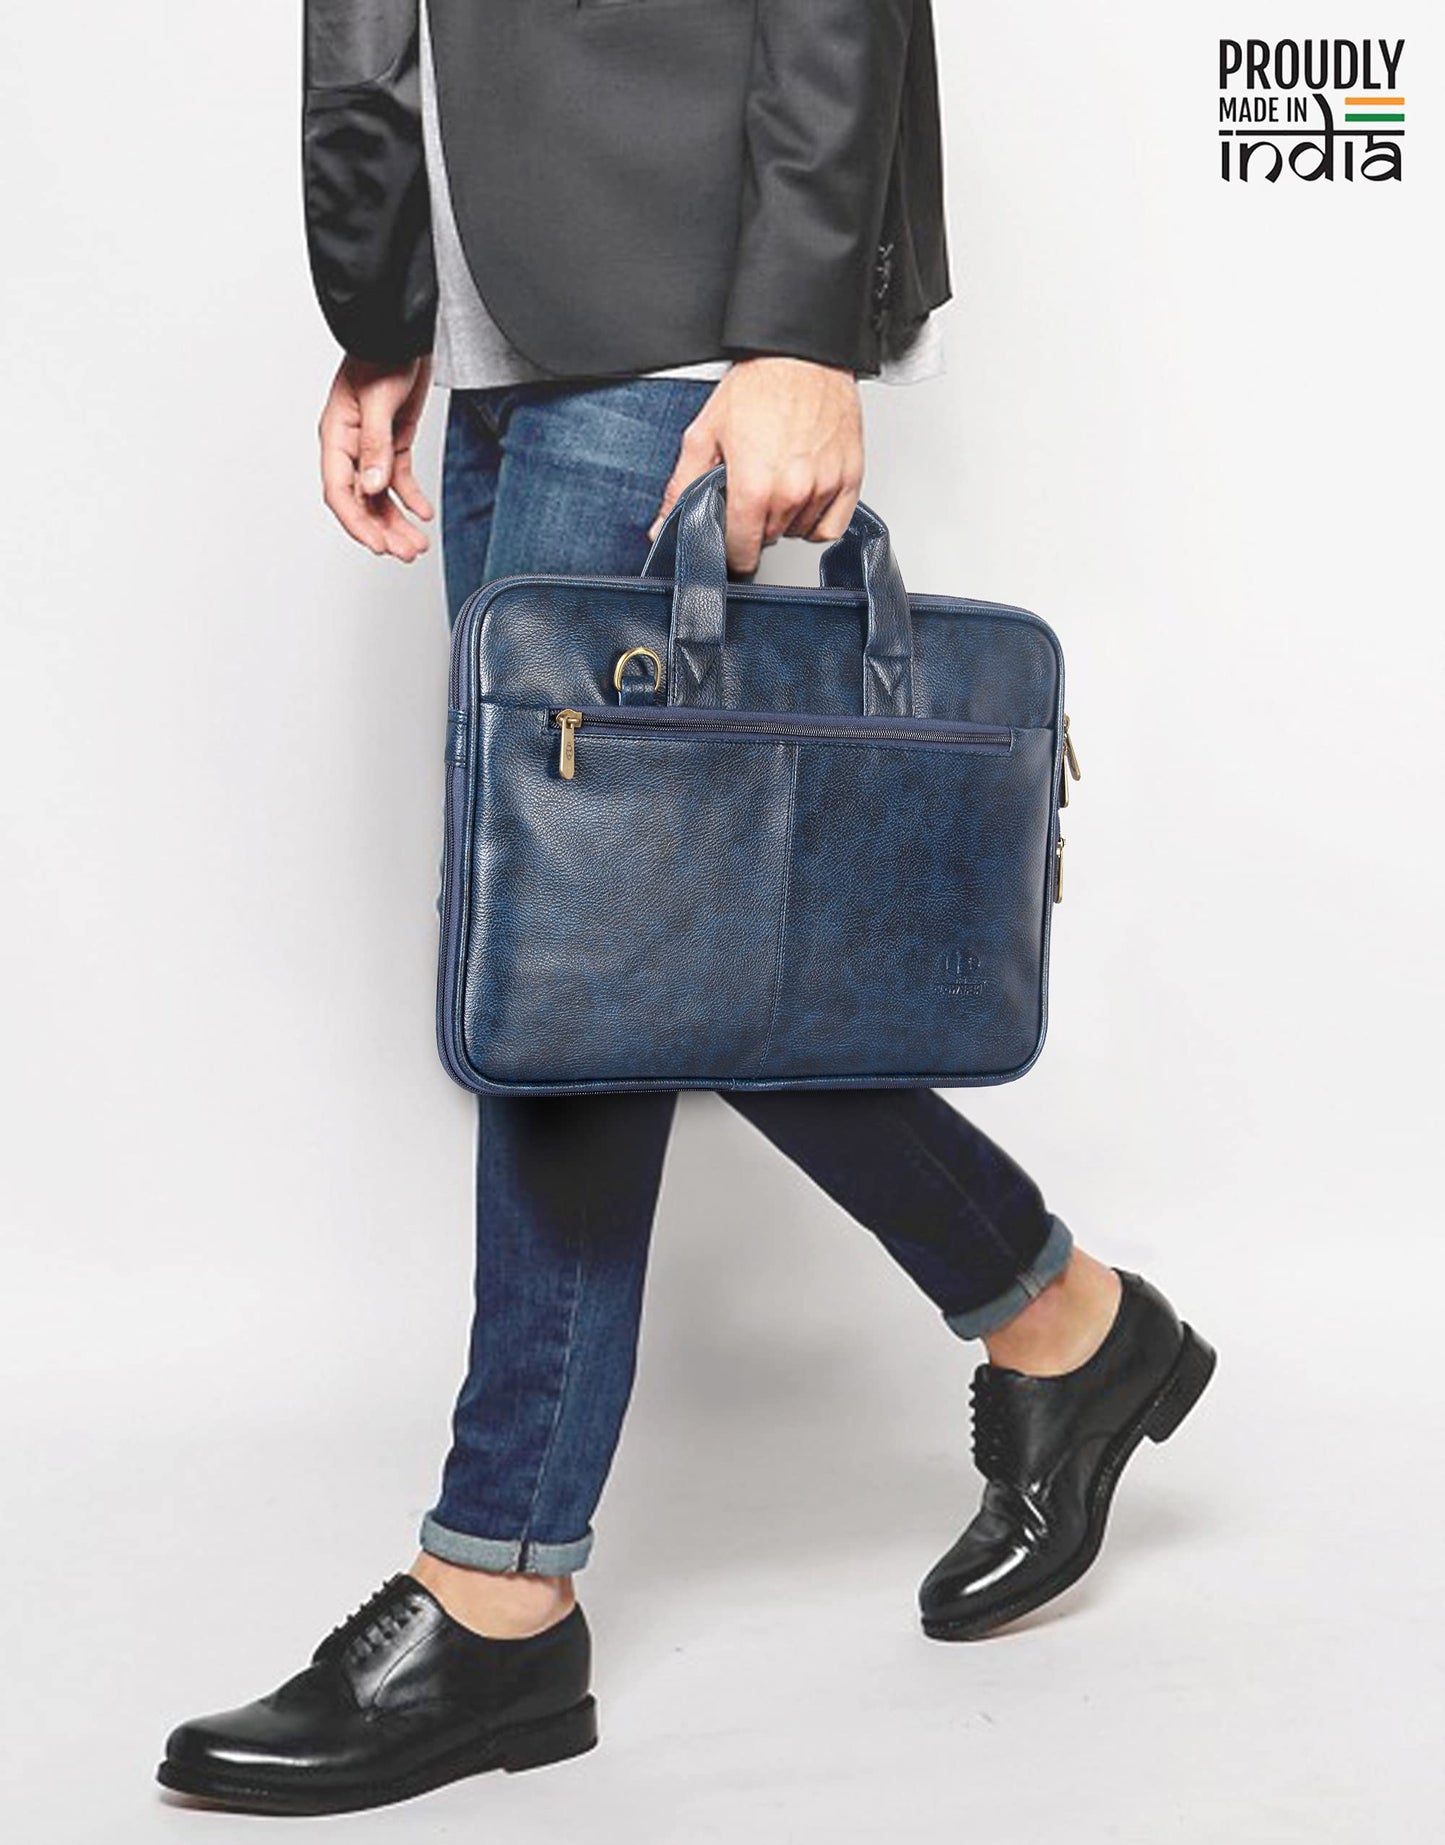 THE CLOWNFISH Cadmus Faux Leather Slim Expandable 12 inch Laptop Messenger Bag Laptop Briefcase (Blue)